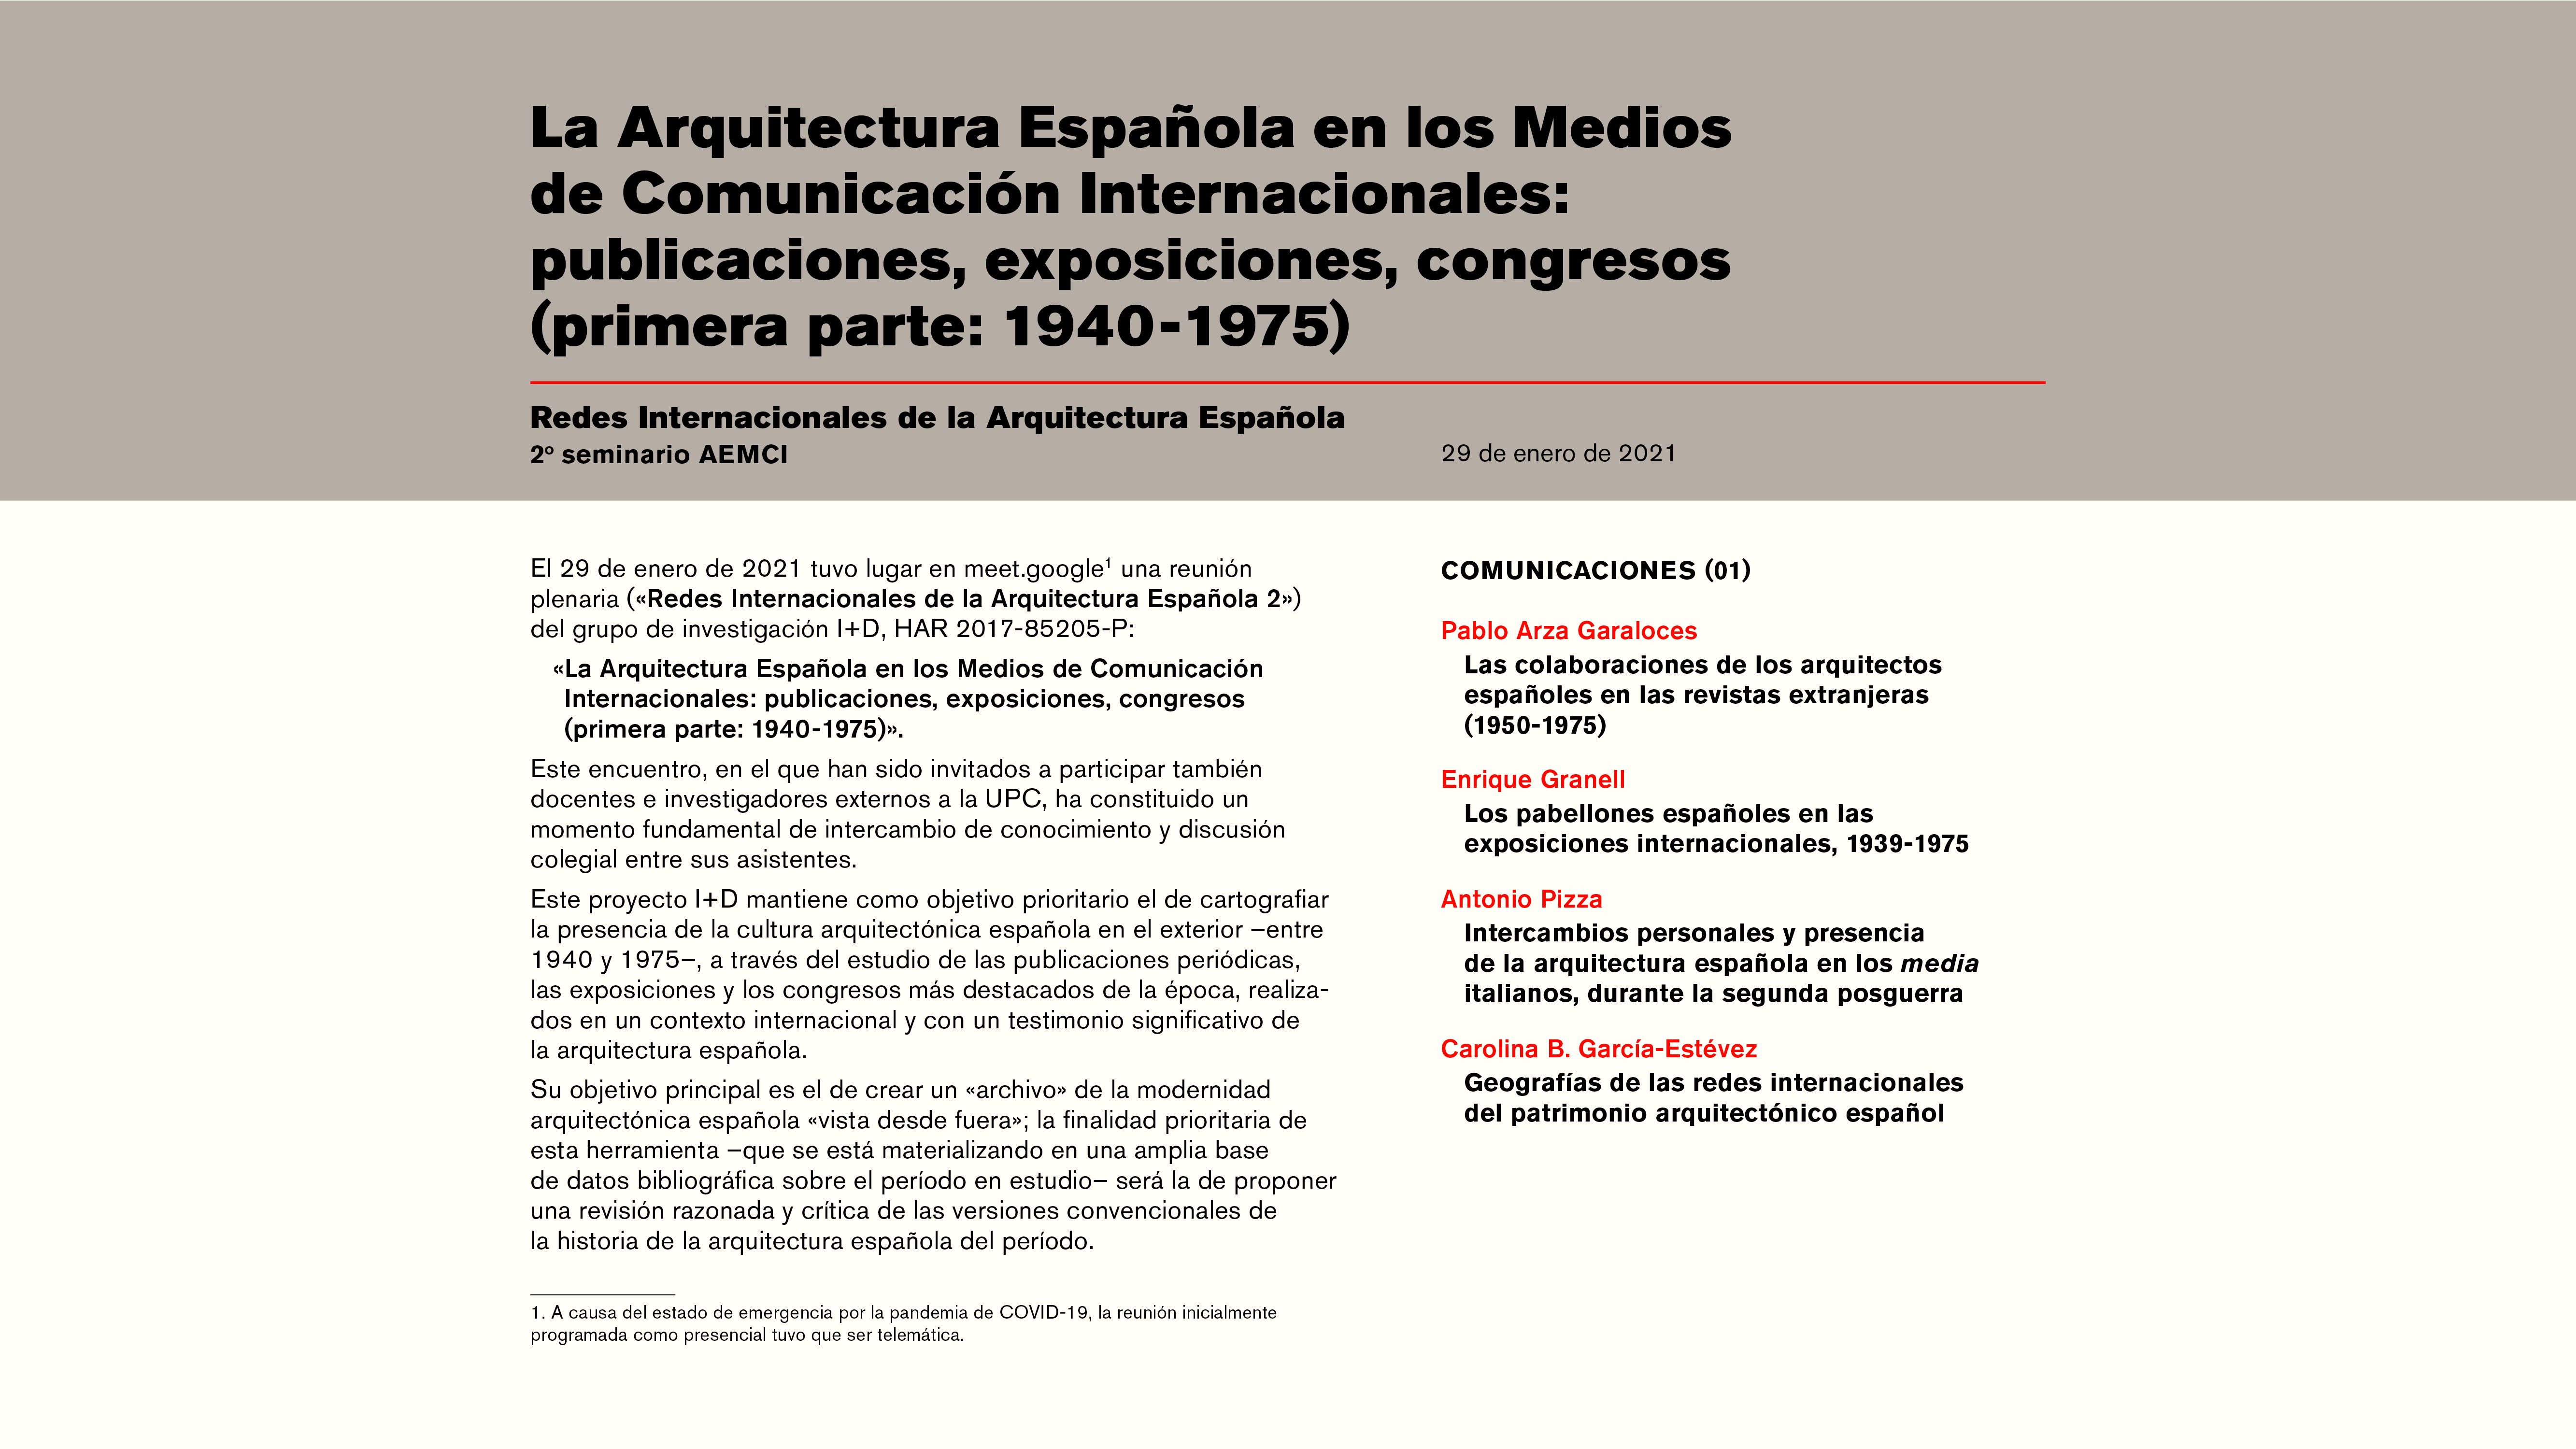 ETSAB. La Arquitectura Española en los Medios de Comunicación Internacionales: publicaciones, exposiciones, congresos (1940-1975)